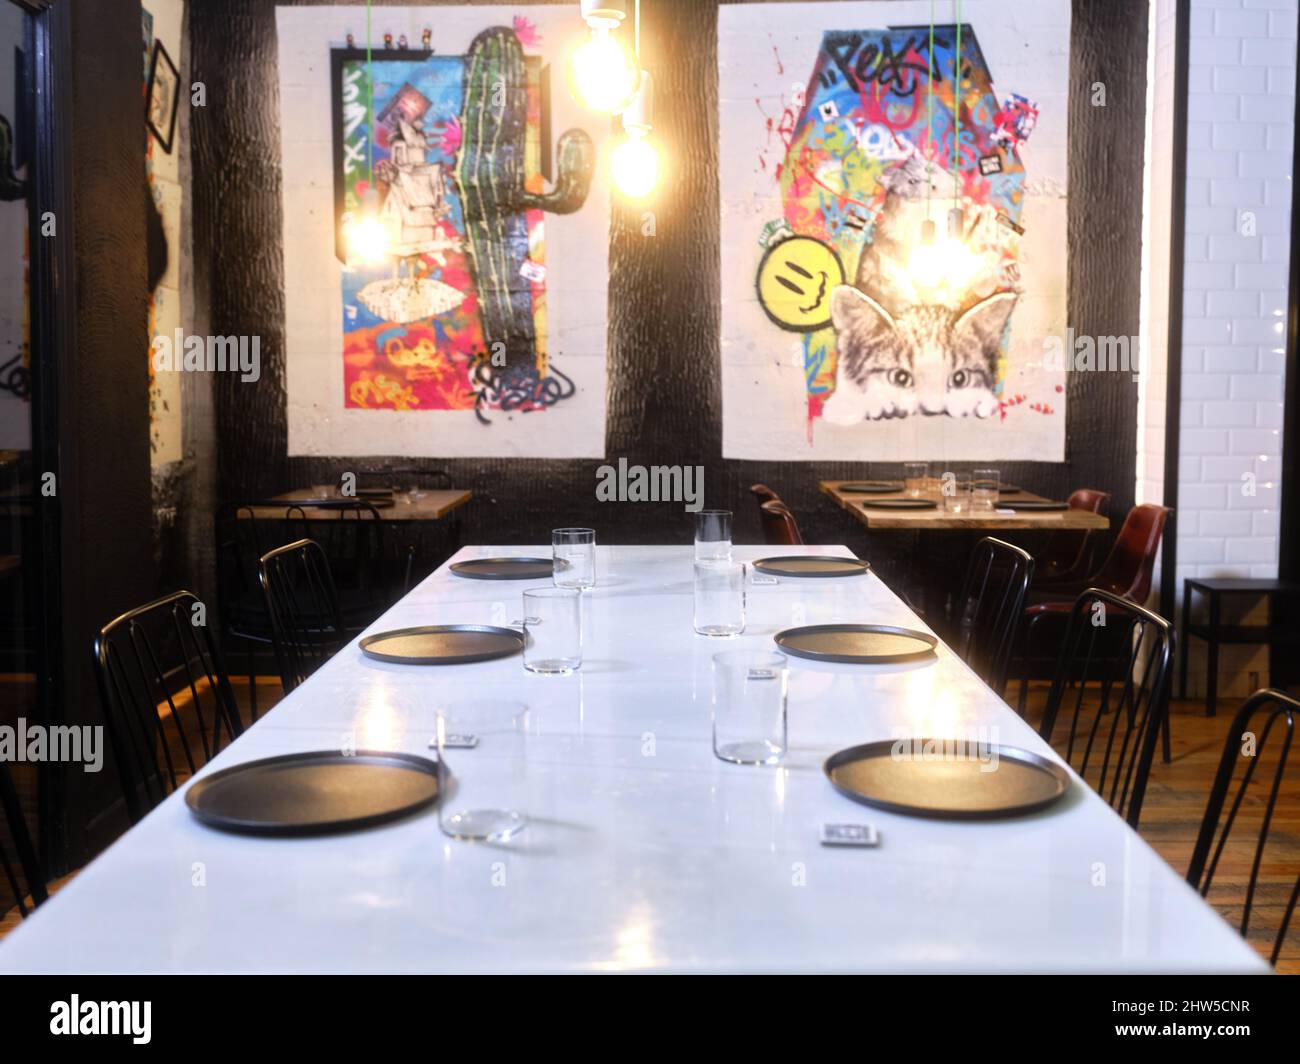 Table de restaurant avec peintures contemporaines en arrière-plan Banque D'Images